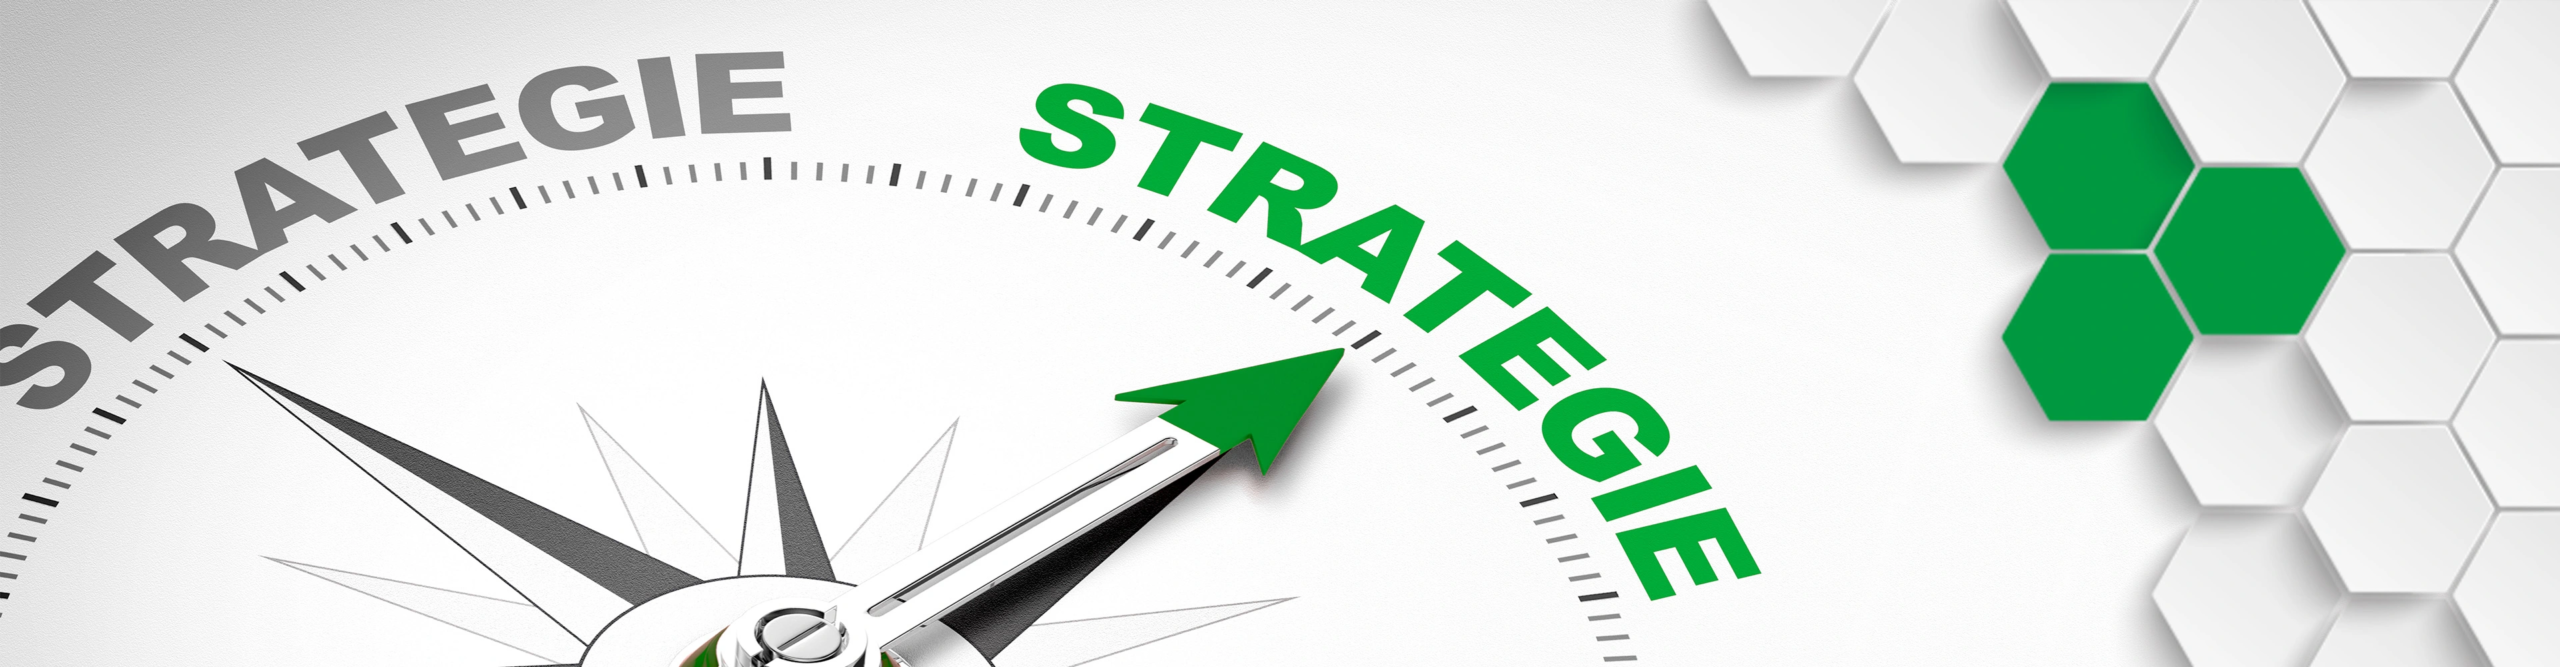 Strategieentwicklung-Unternehmensstruktur-Organisationsstruktur-Unternehmensstrategie